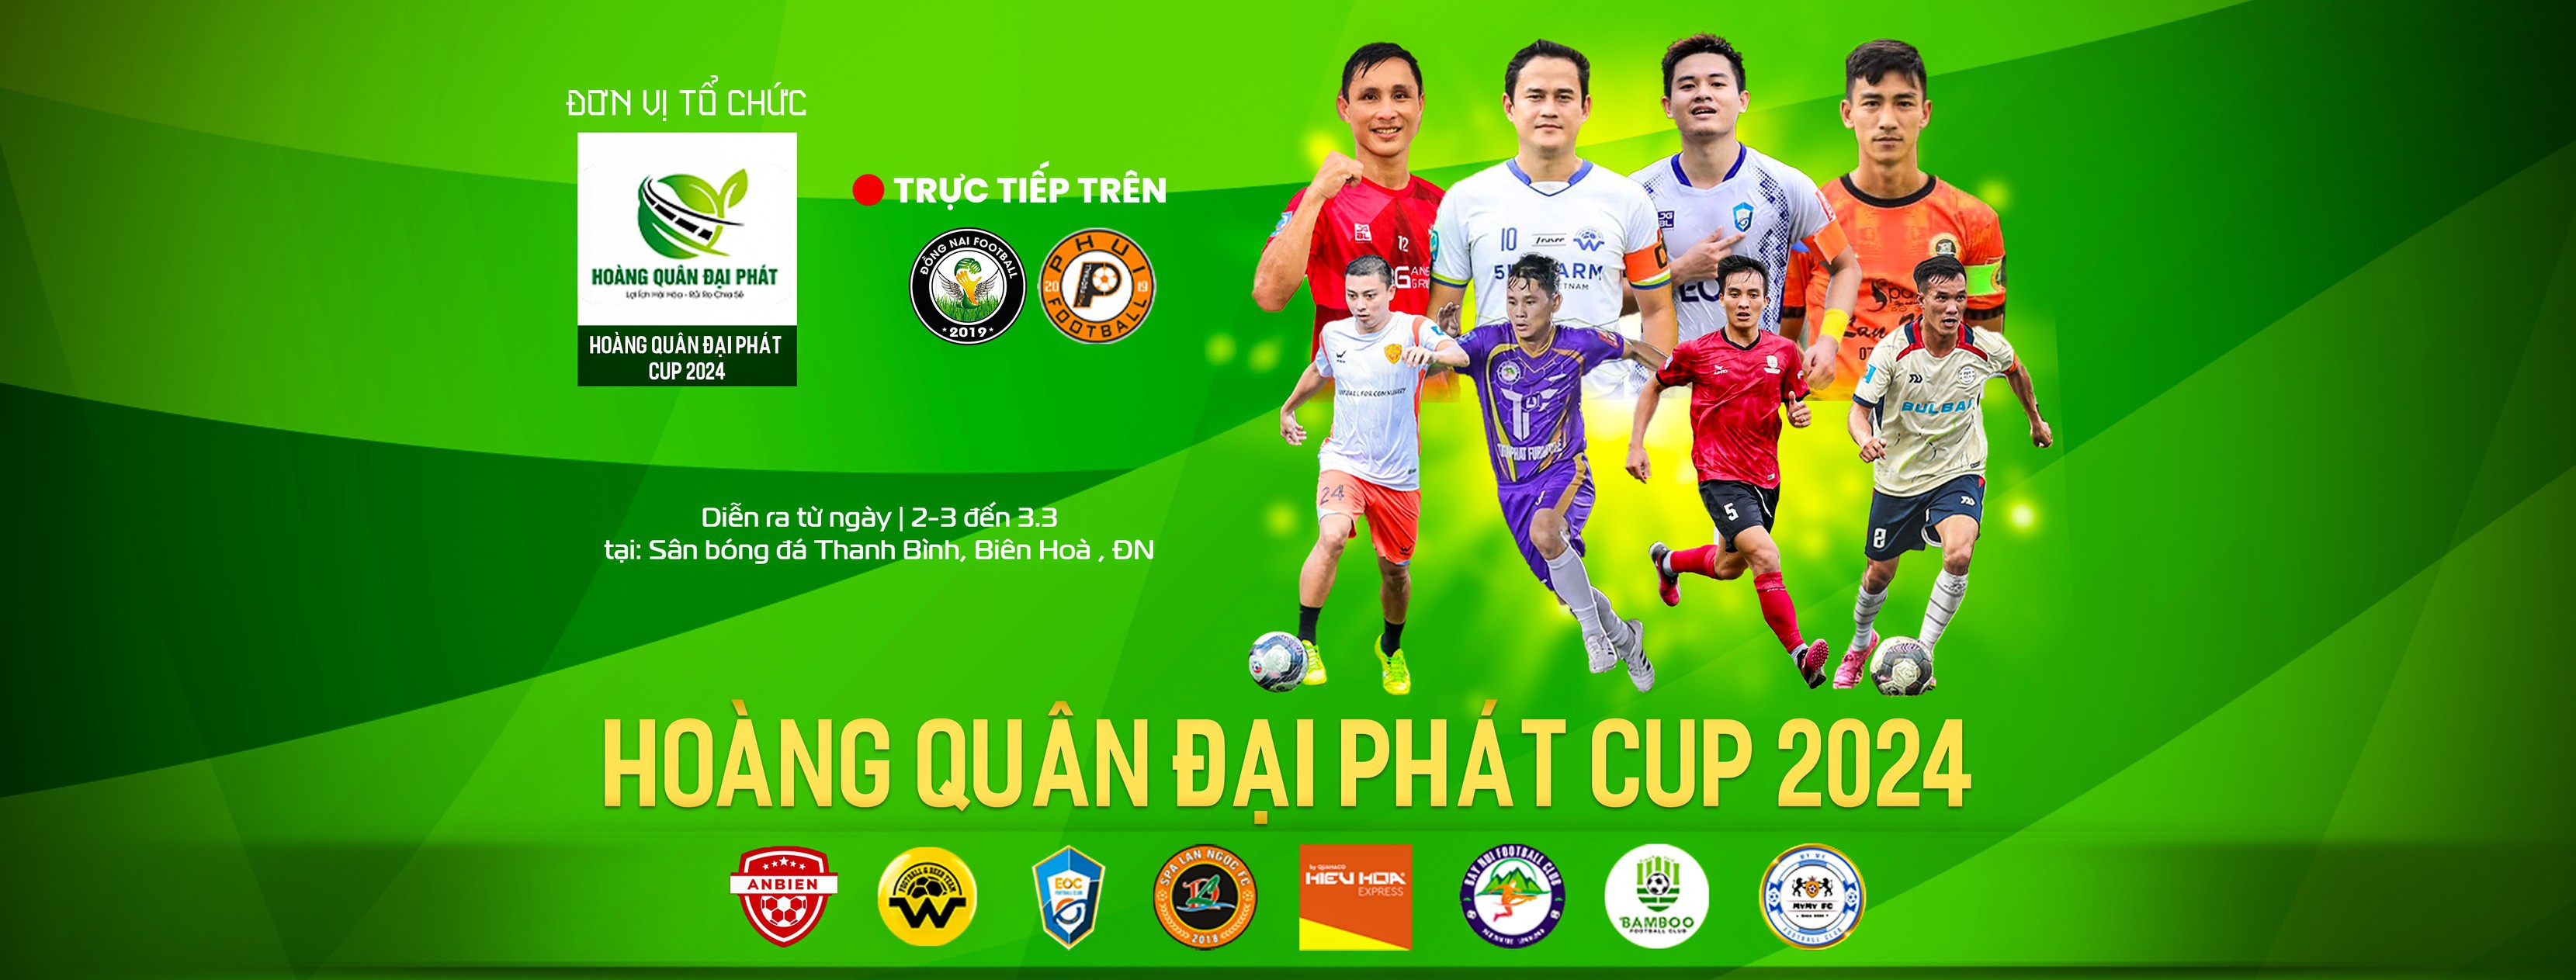 Sẵn sàng cho ngày hội bóng đá 7 người ở Đồng Nai